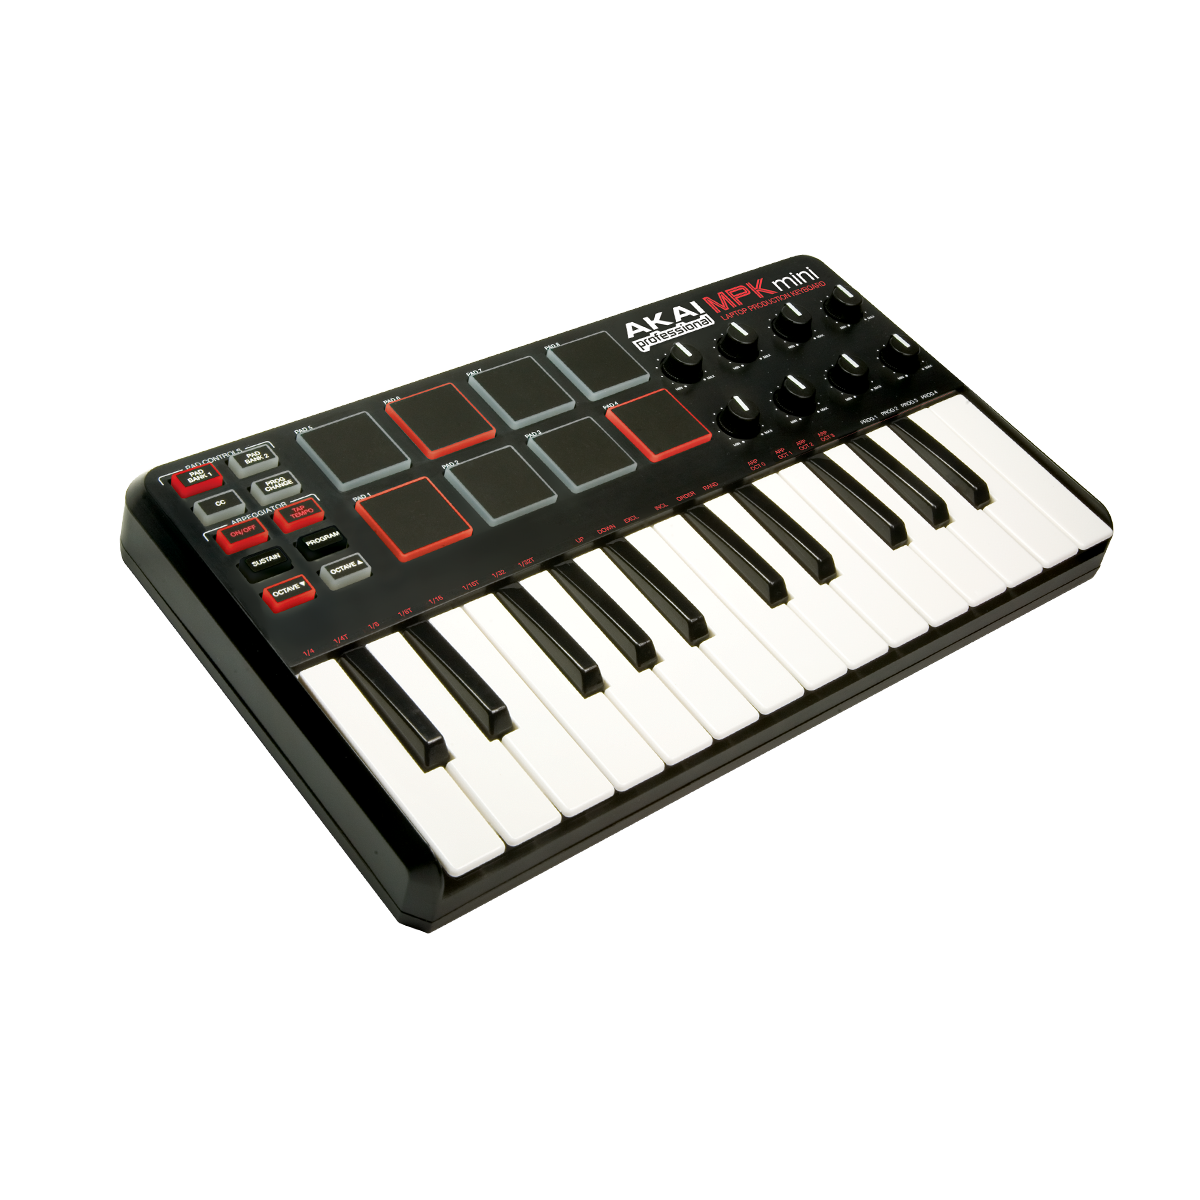 Bedste MIDI keyboards i 2022